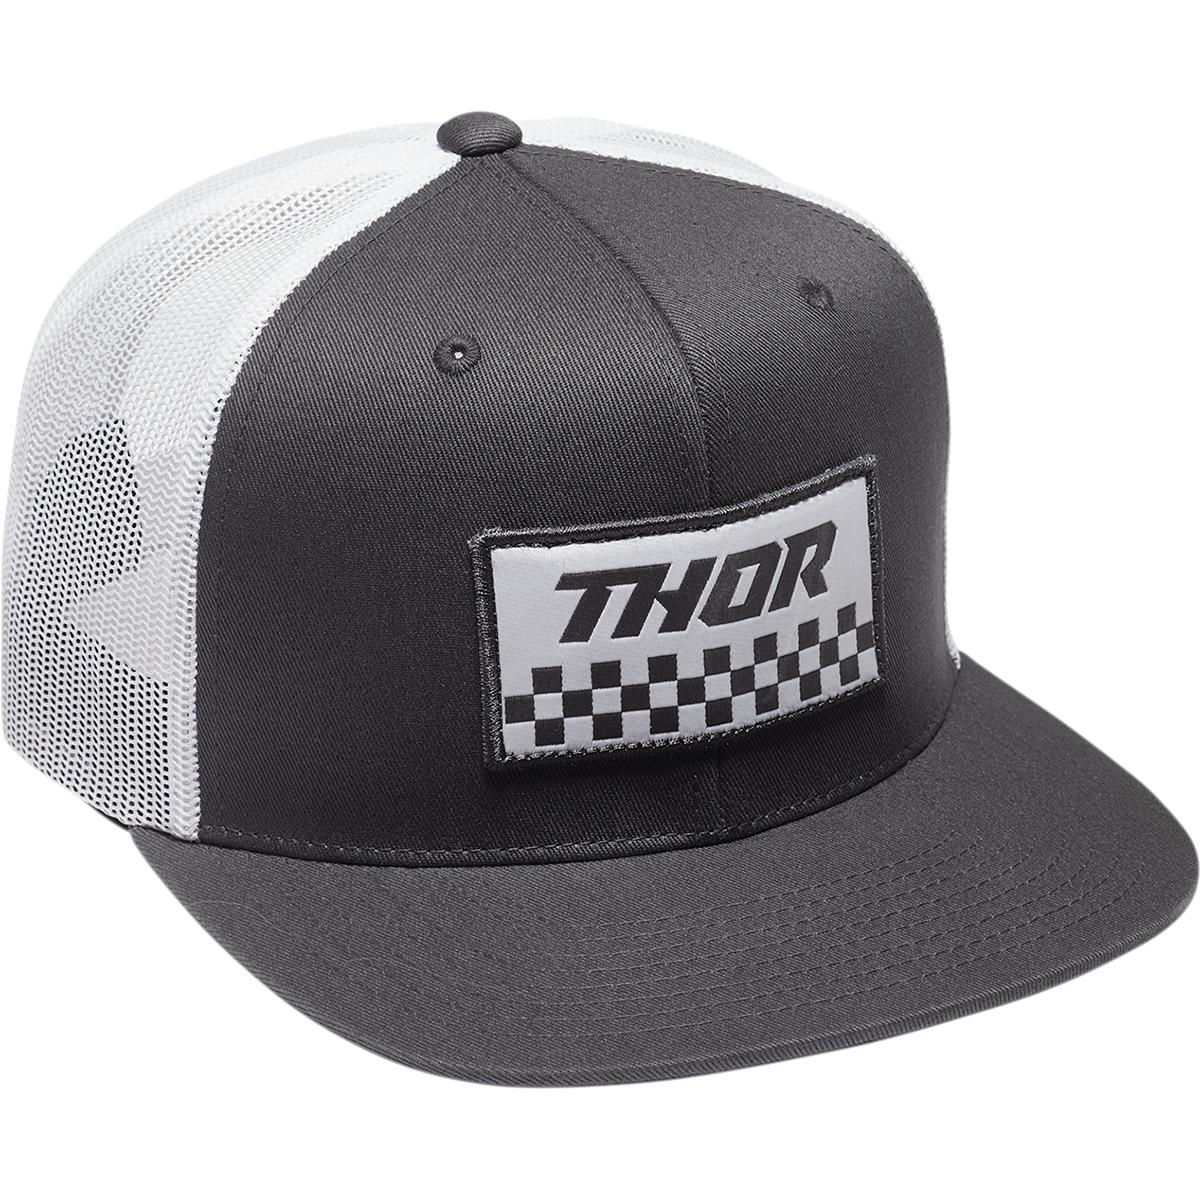 Thor Cap Thor Checker - Grau/Weiß